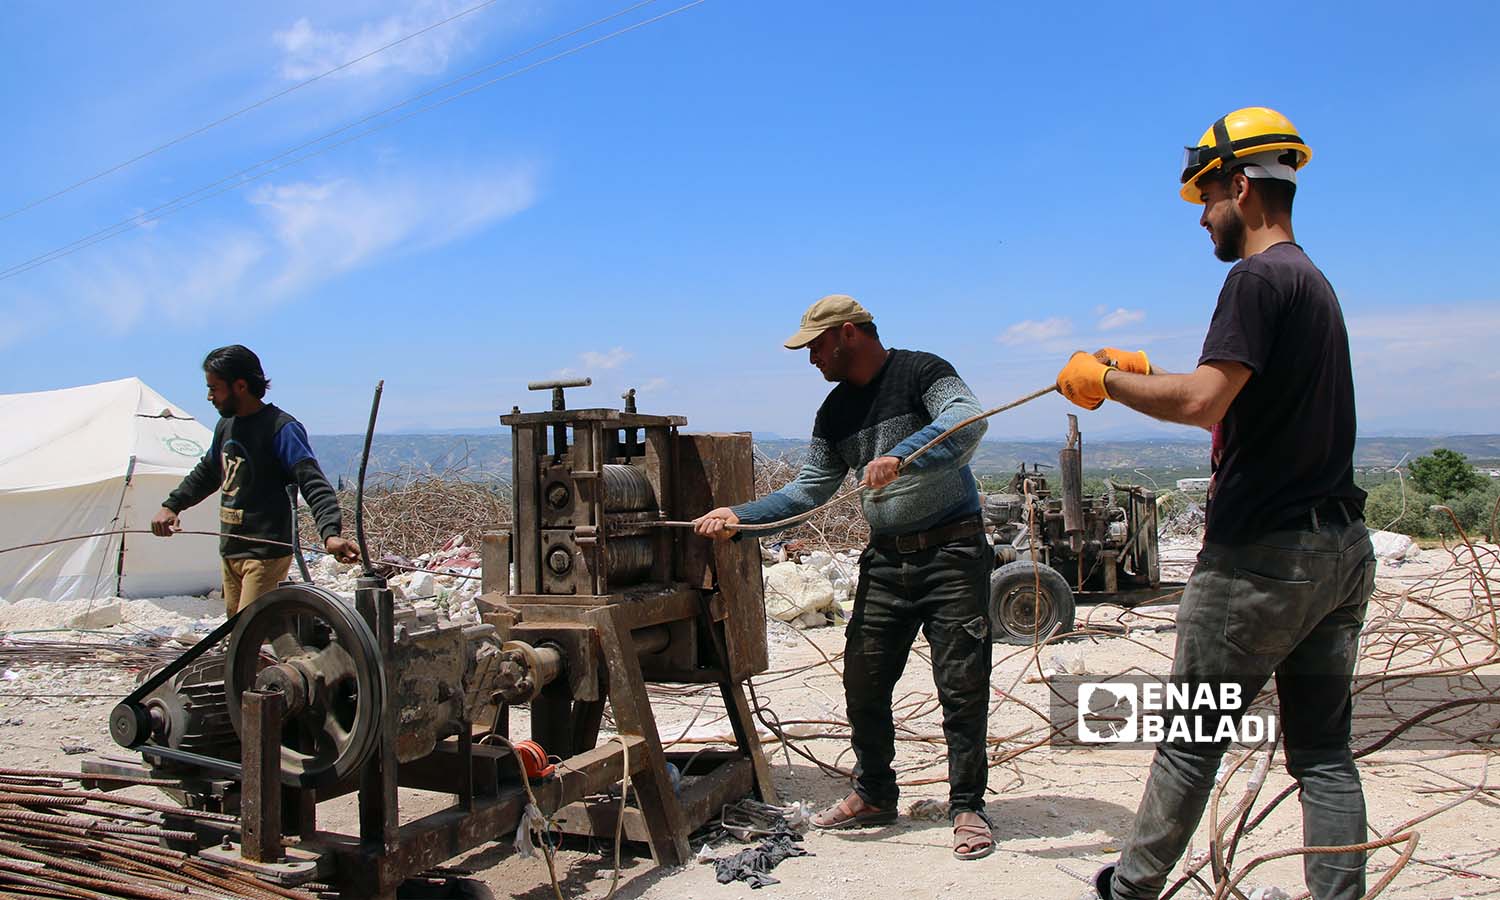 عمال يقومون بمعالجة قضبان الحديد المستخرجة من ركام الأبنية المدمرة بفعل الزلزال لإعادة تدويرها واستخدامها في سلقين بريف إدلب- 30 نيسان 2023(عنب بلدي- إياد عبد الجواد)